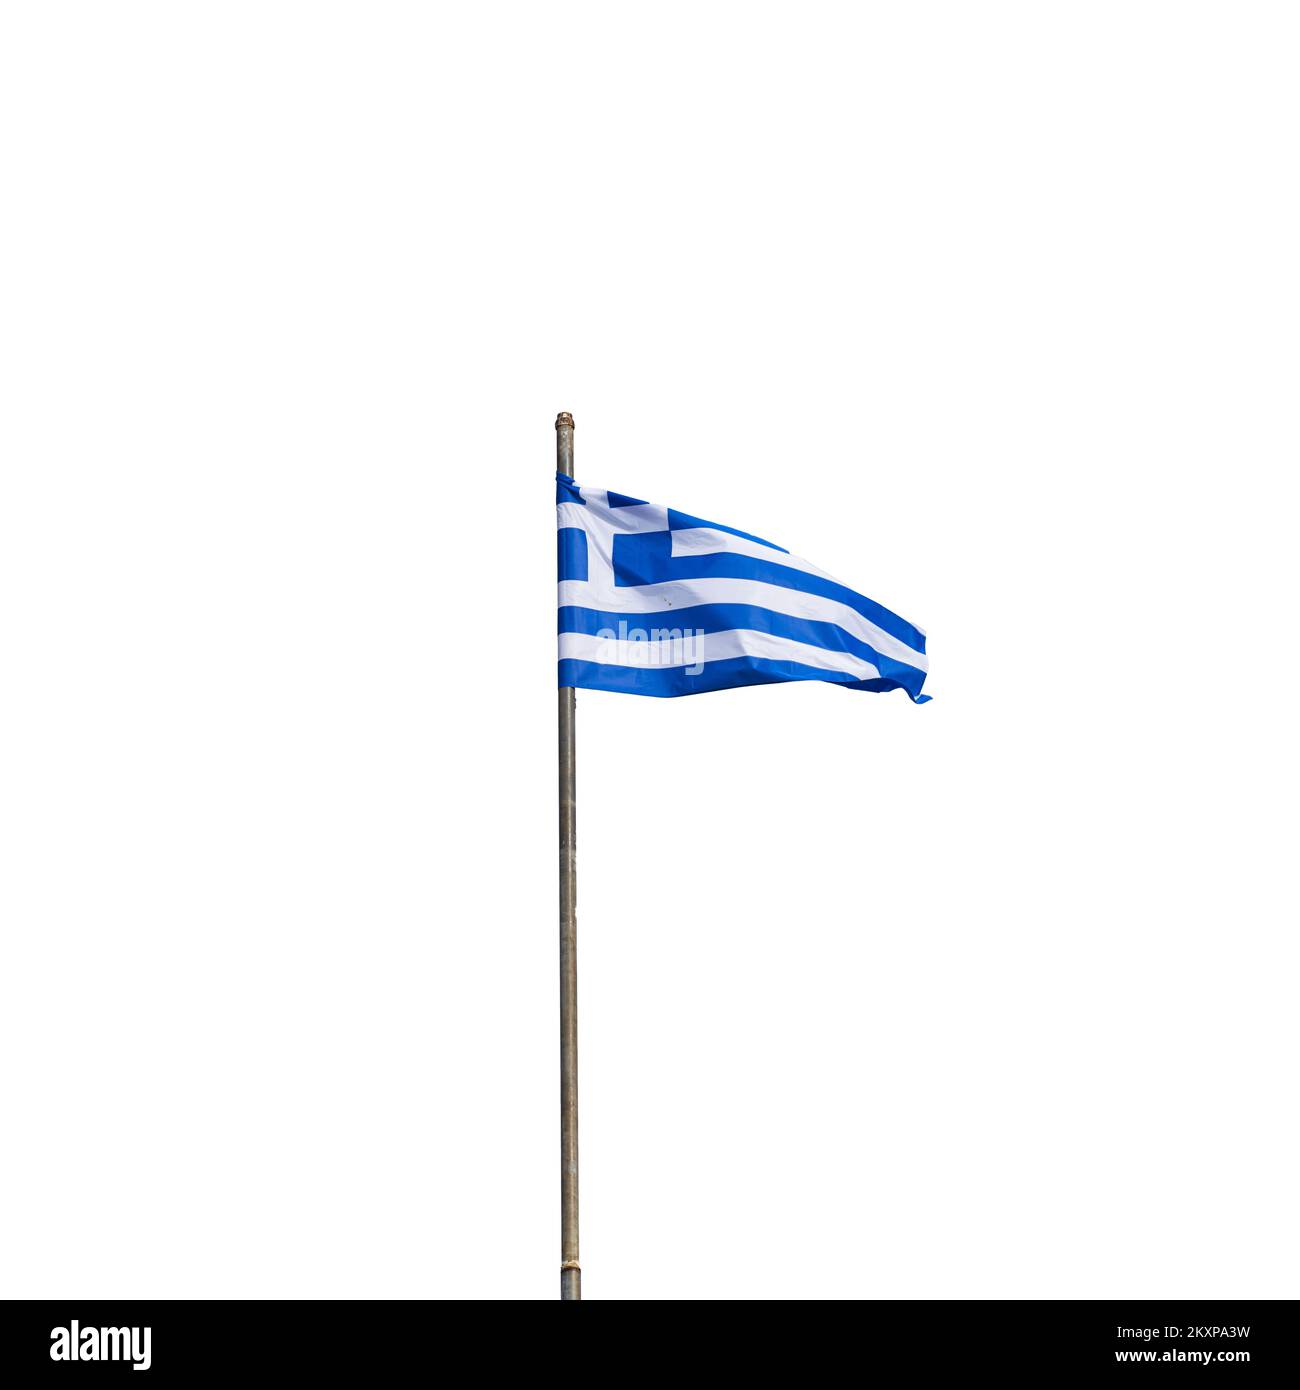 Griechische flagge im wind Ausgeschnittene Stockfotos und -bilder - Alamy